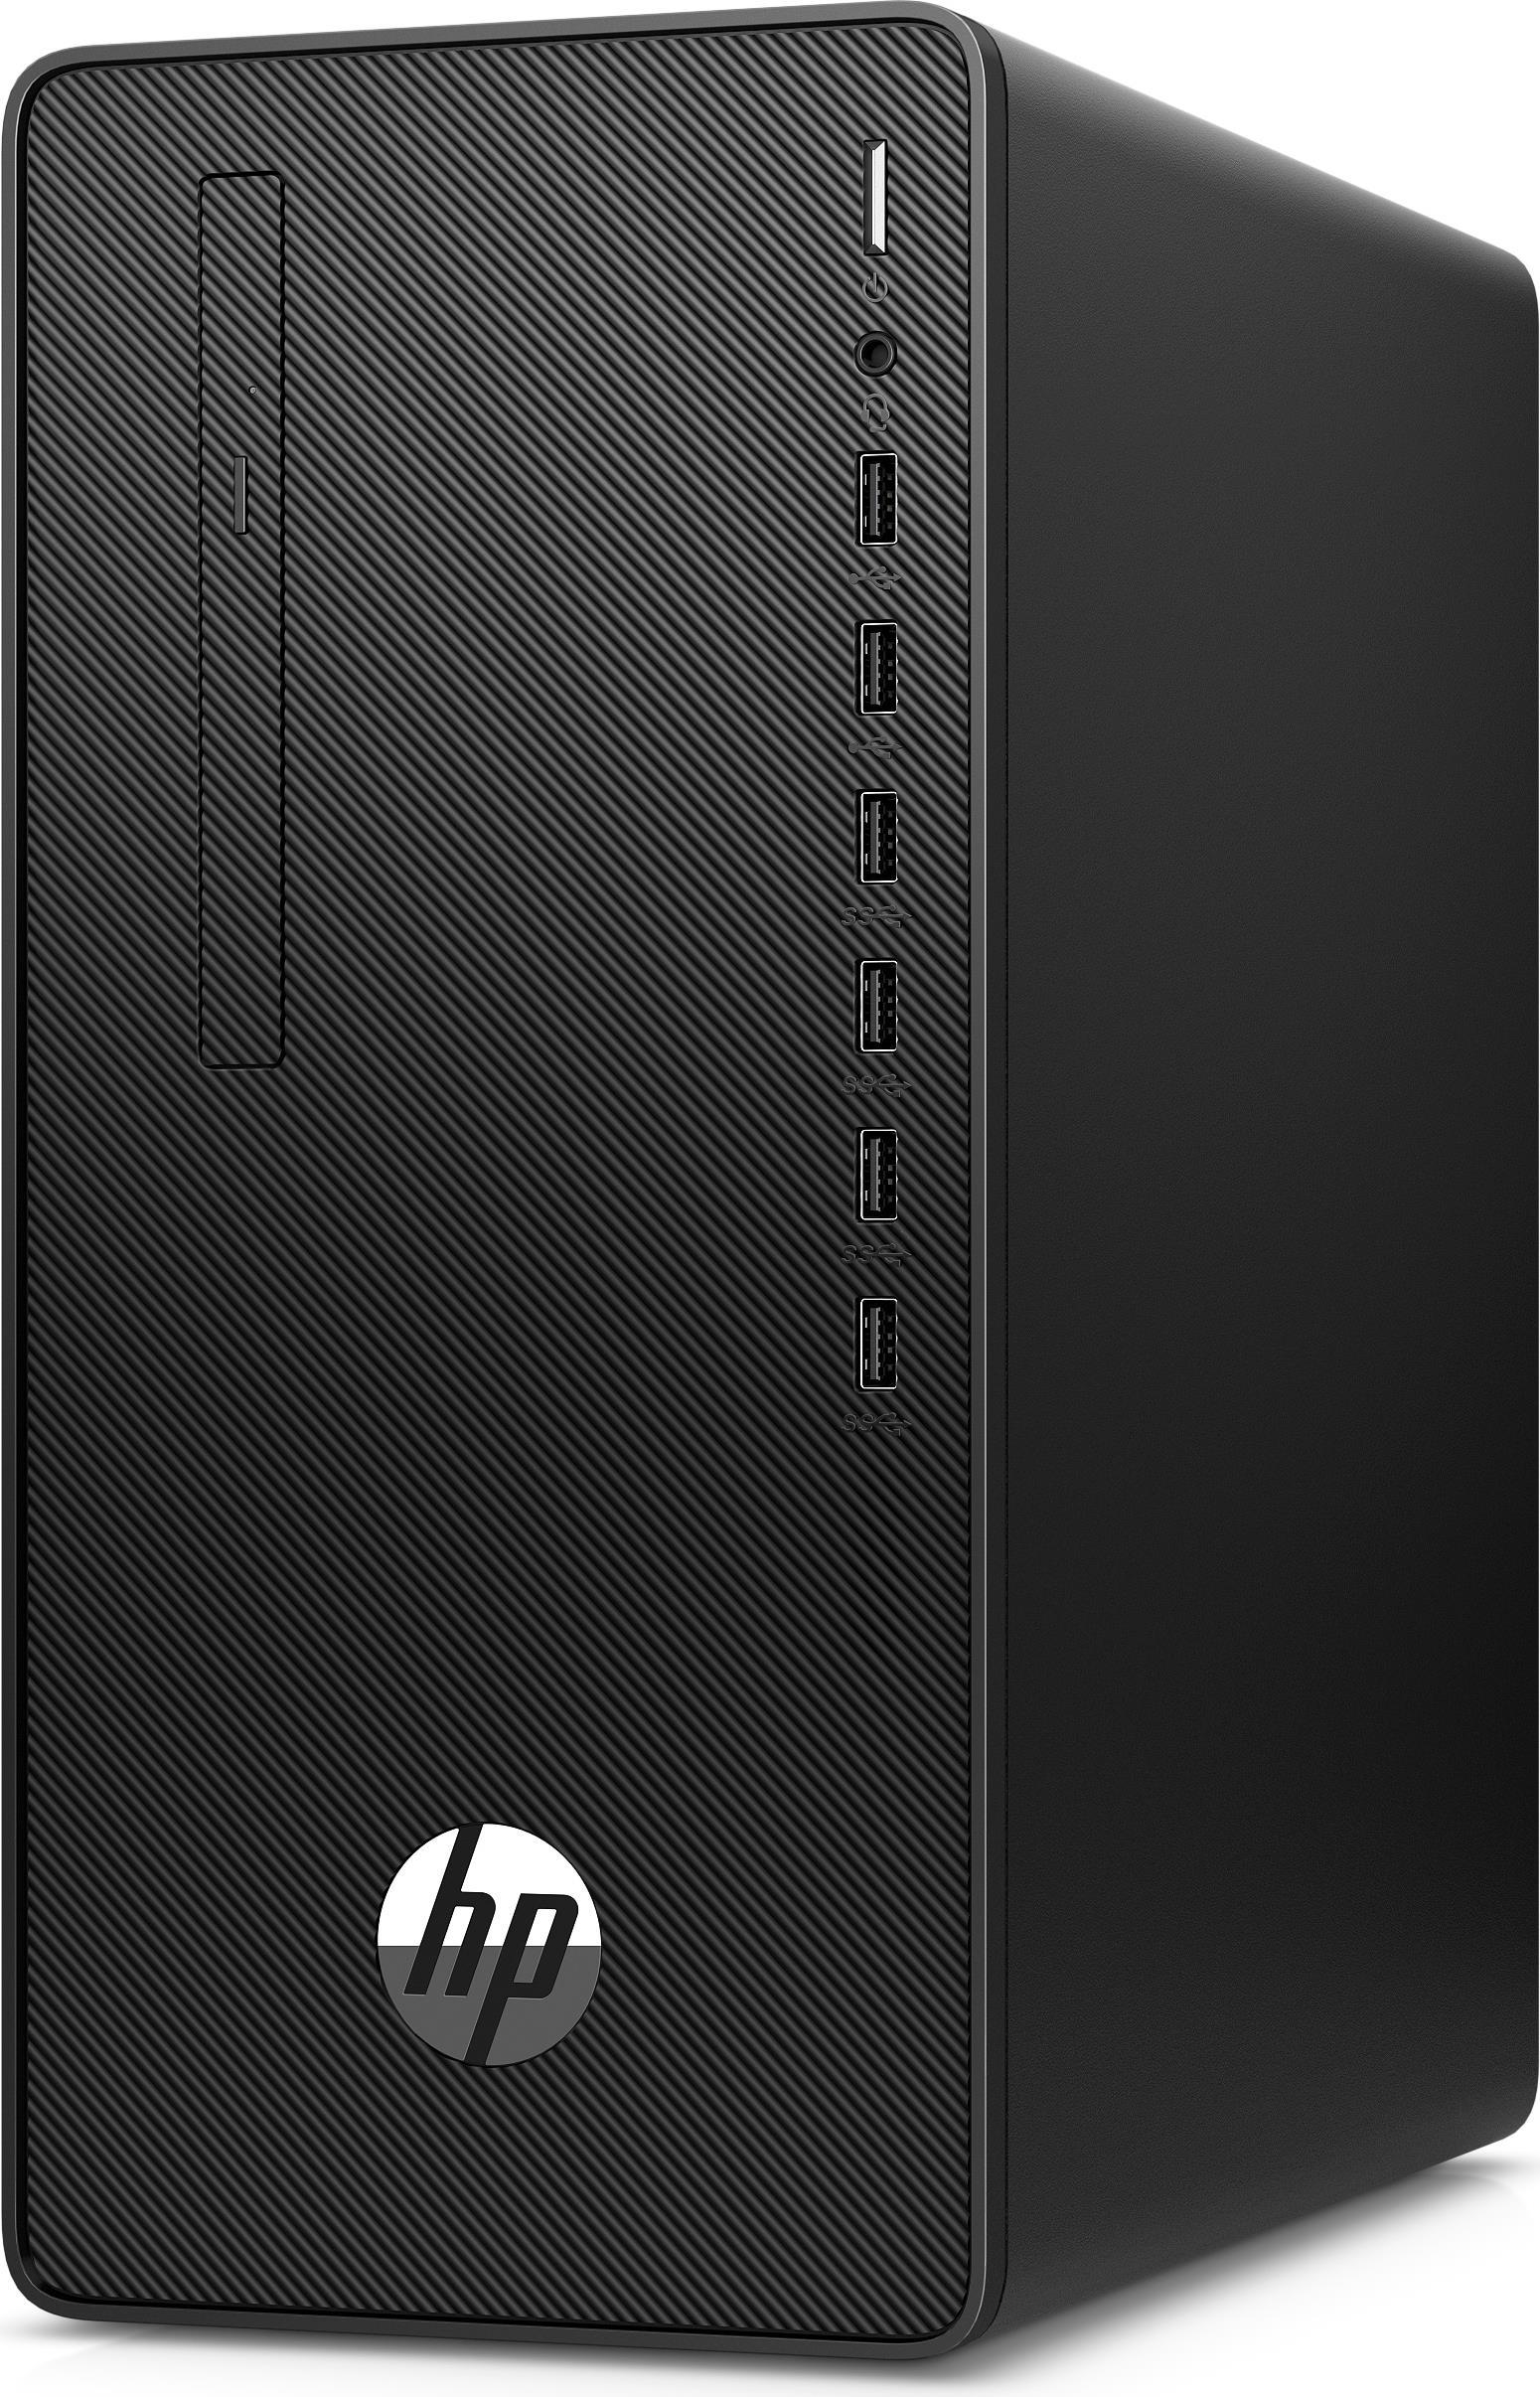 HP Microtower-PC 295 G6 MT, Ryzen 3 4300G, 8GB RAM, 256GB SSD (294Y0EA#ABD)